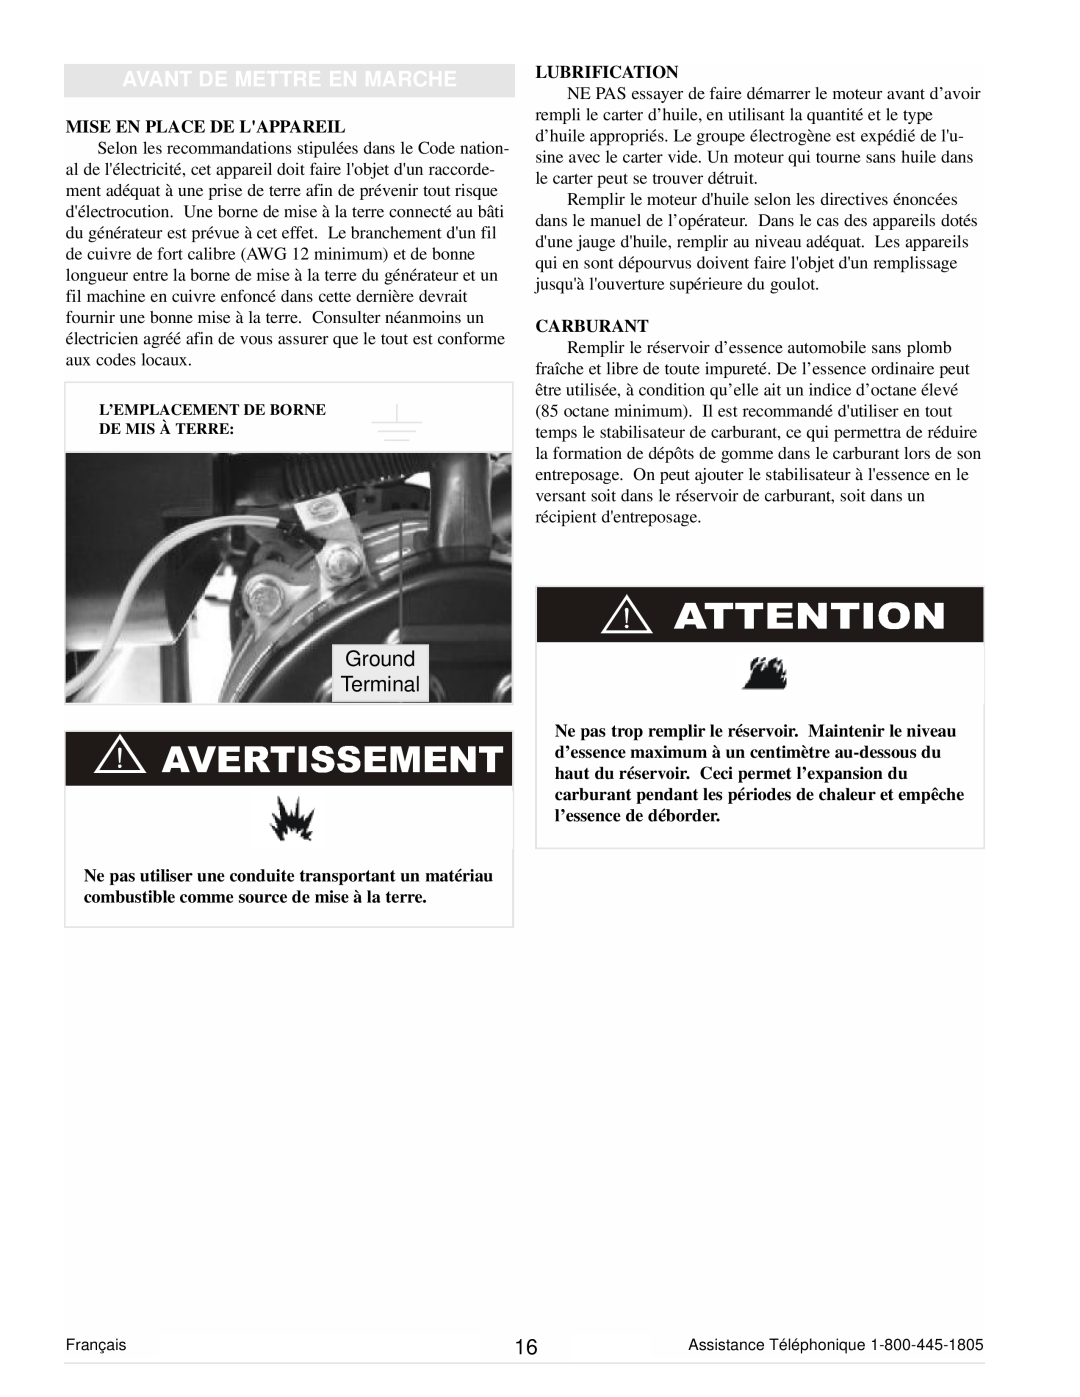 Powermate PM0101400 manual Avant De Mettre En Marche, Ground Terminal, Mise En Place De Lappareil, Lubrification, Carburant 